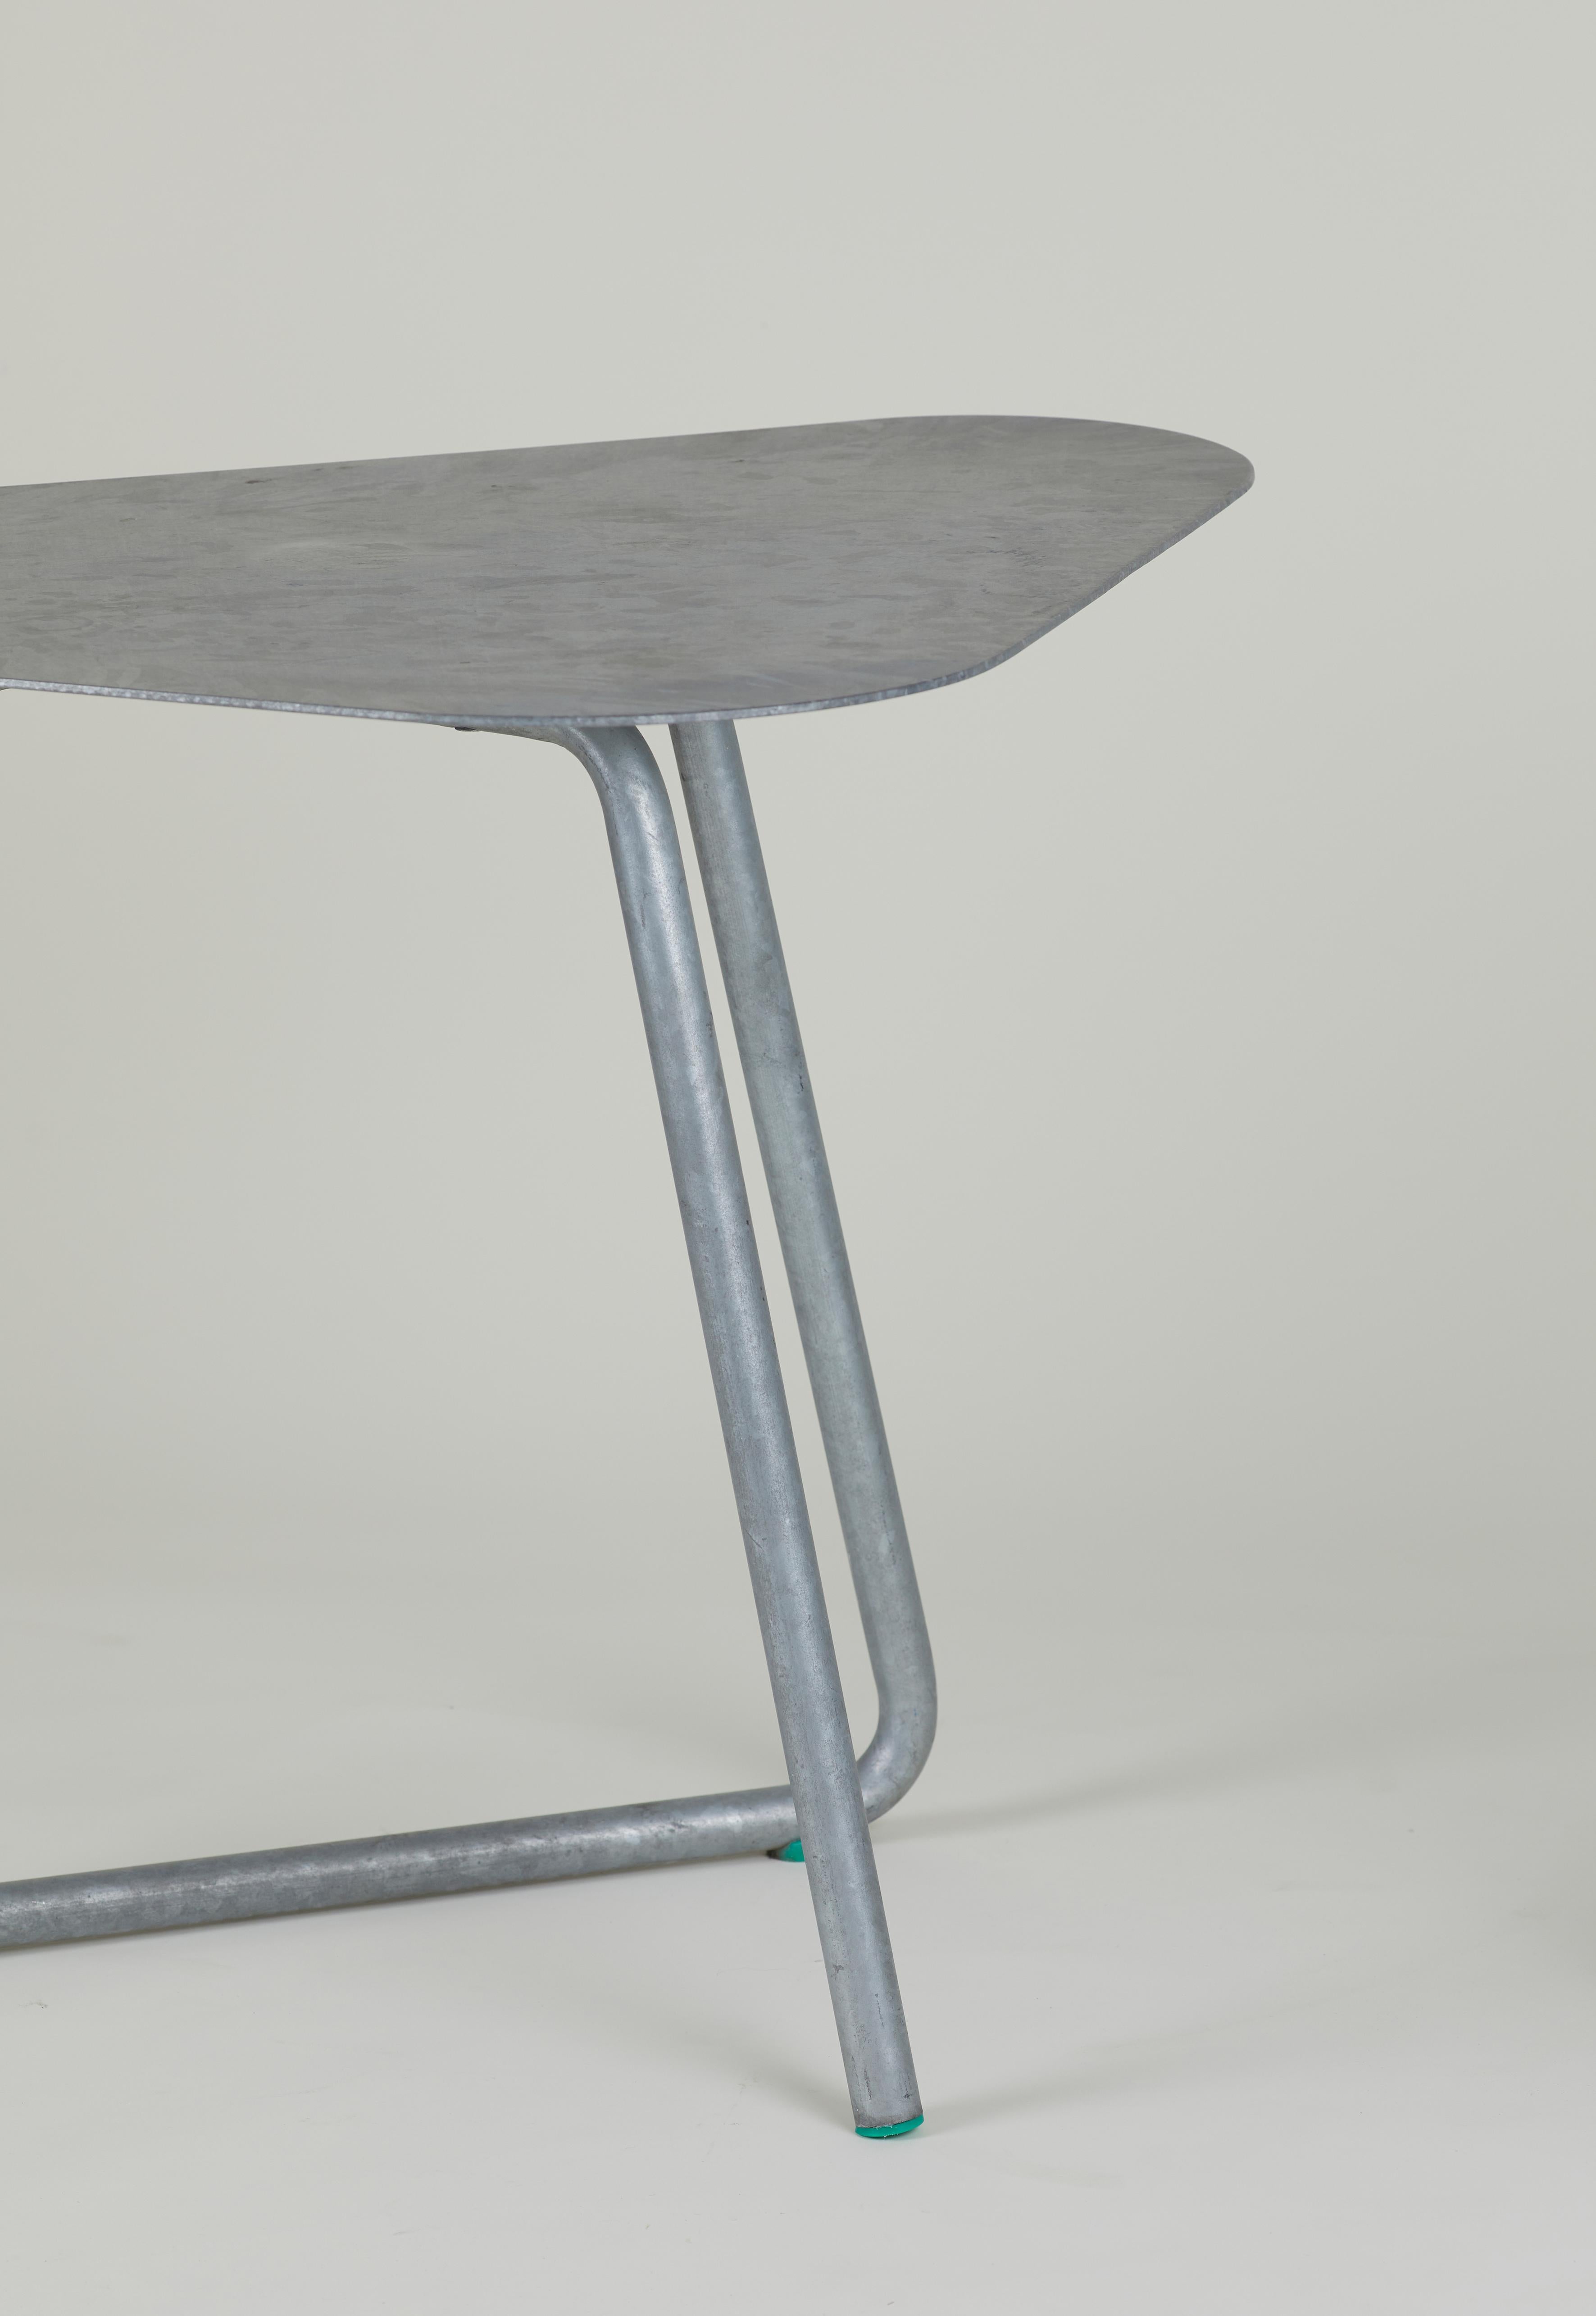 SPT table d'extérieur en acier galvanisé par l'atelier thomas serruys (belgique).

Table en acier constituée d'un tube profilé avec plateau en tôle d'acier galvanisé. 
Repose-pieds en Ertalon.

Parfait pour une utilisation en extérieur, aucun